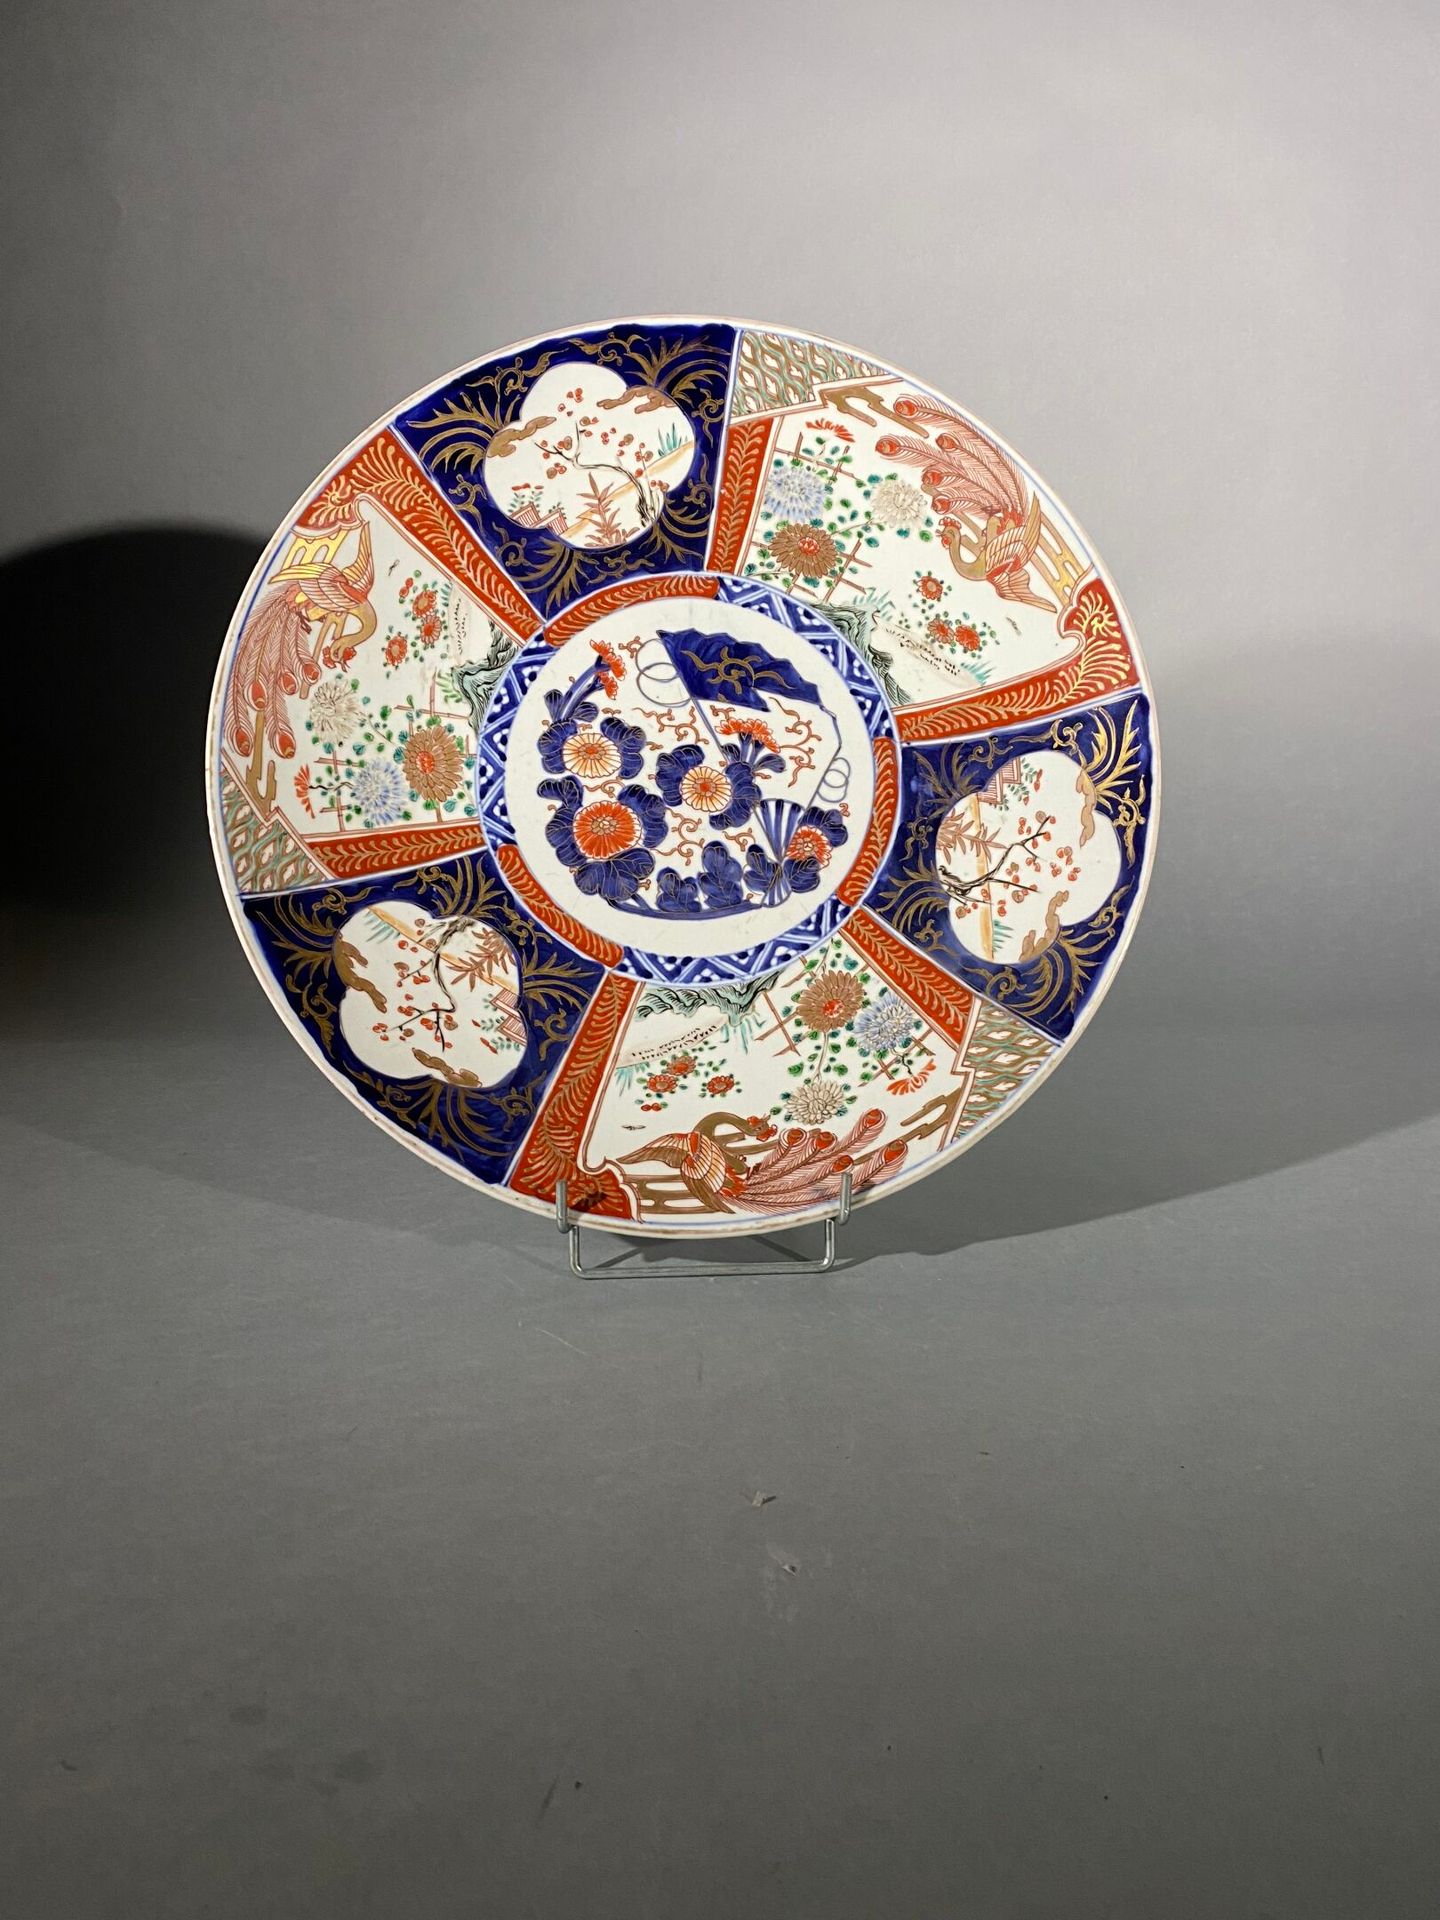 Null 伊万里瓷盘，日本，明治时期（1868-1912 年）
以蓝色釉下彩、多彩珐琅和金色装饰，中间有花朵和扇子，周围是交替出现的凤凰飞翔和梅花盛开的图案。珐&hellip;